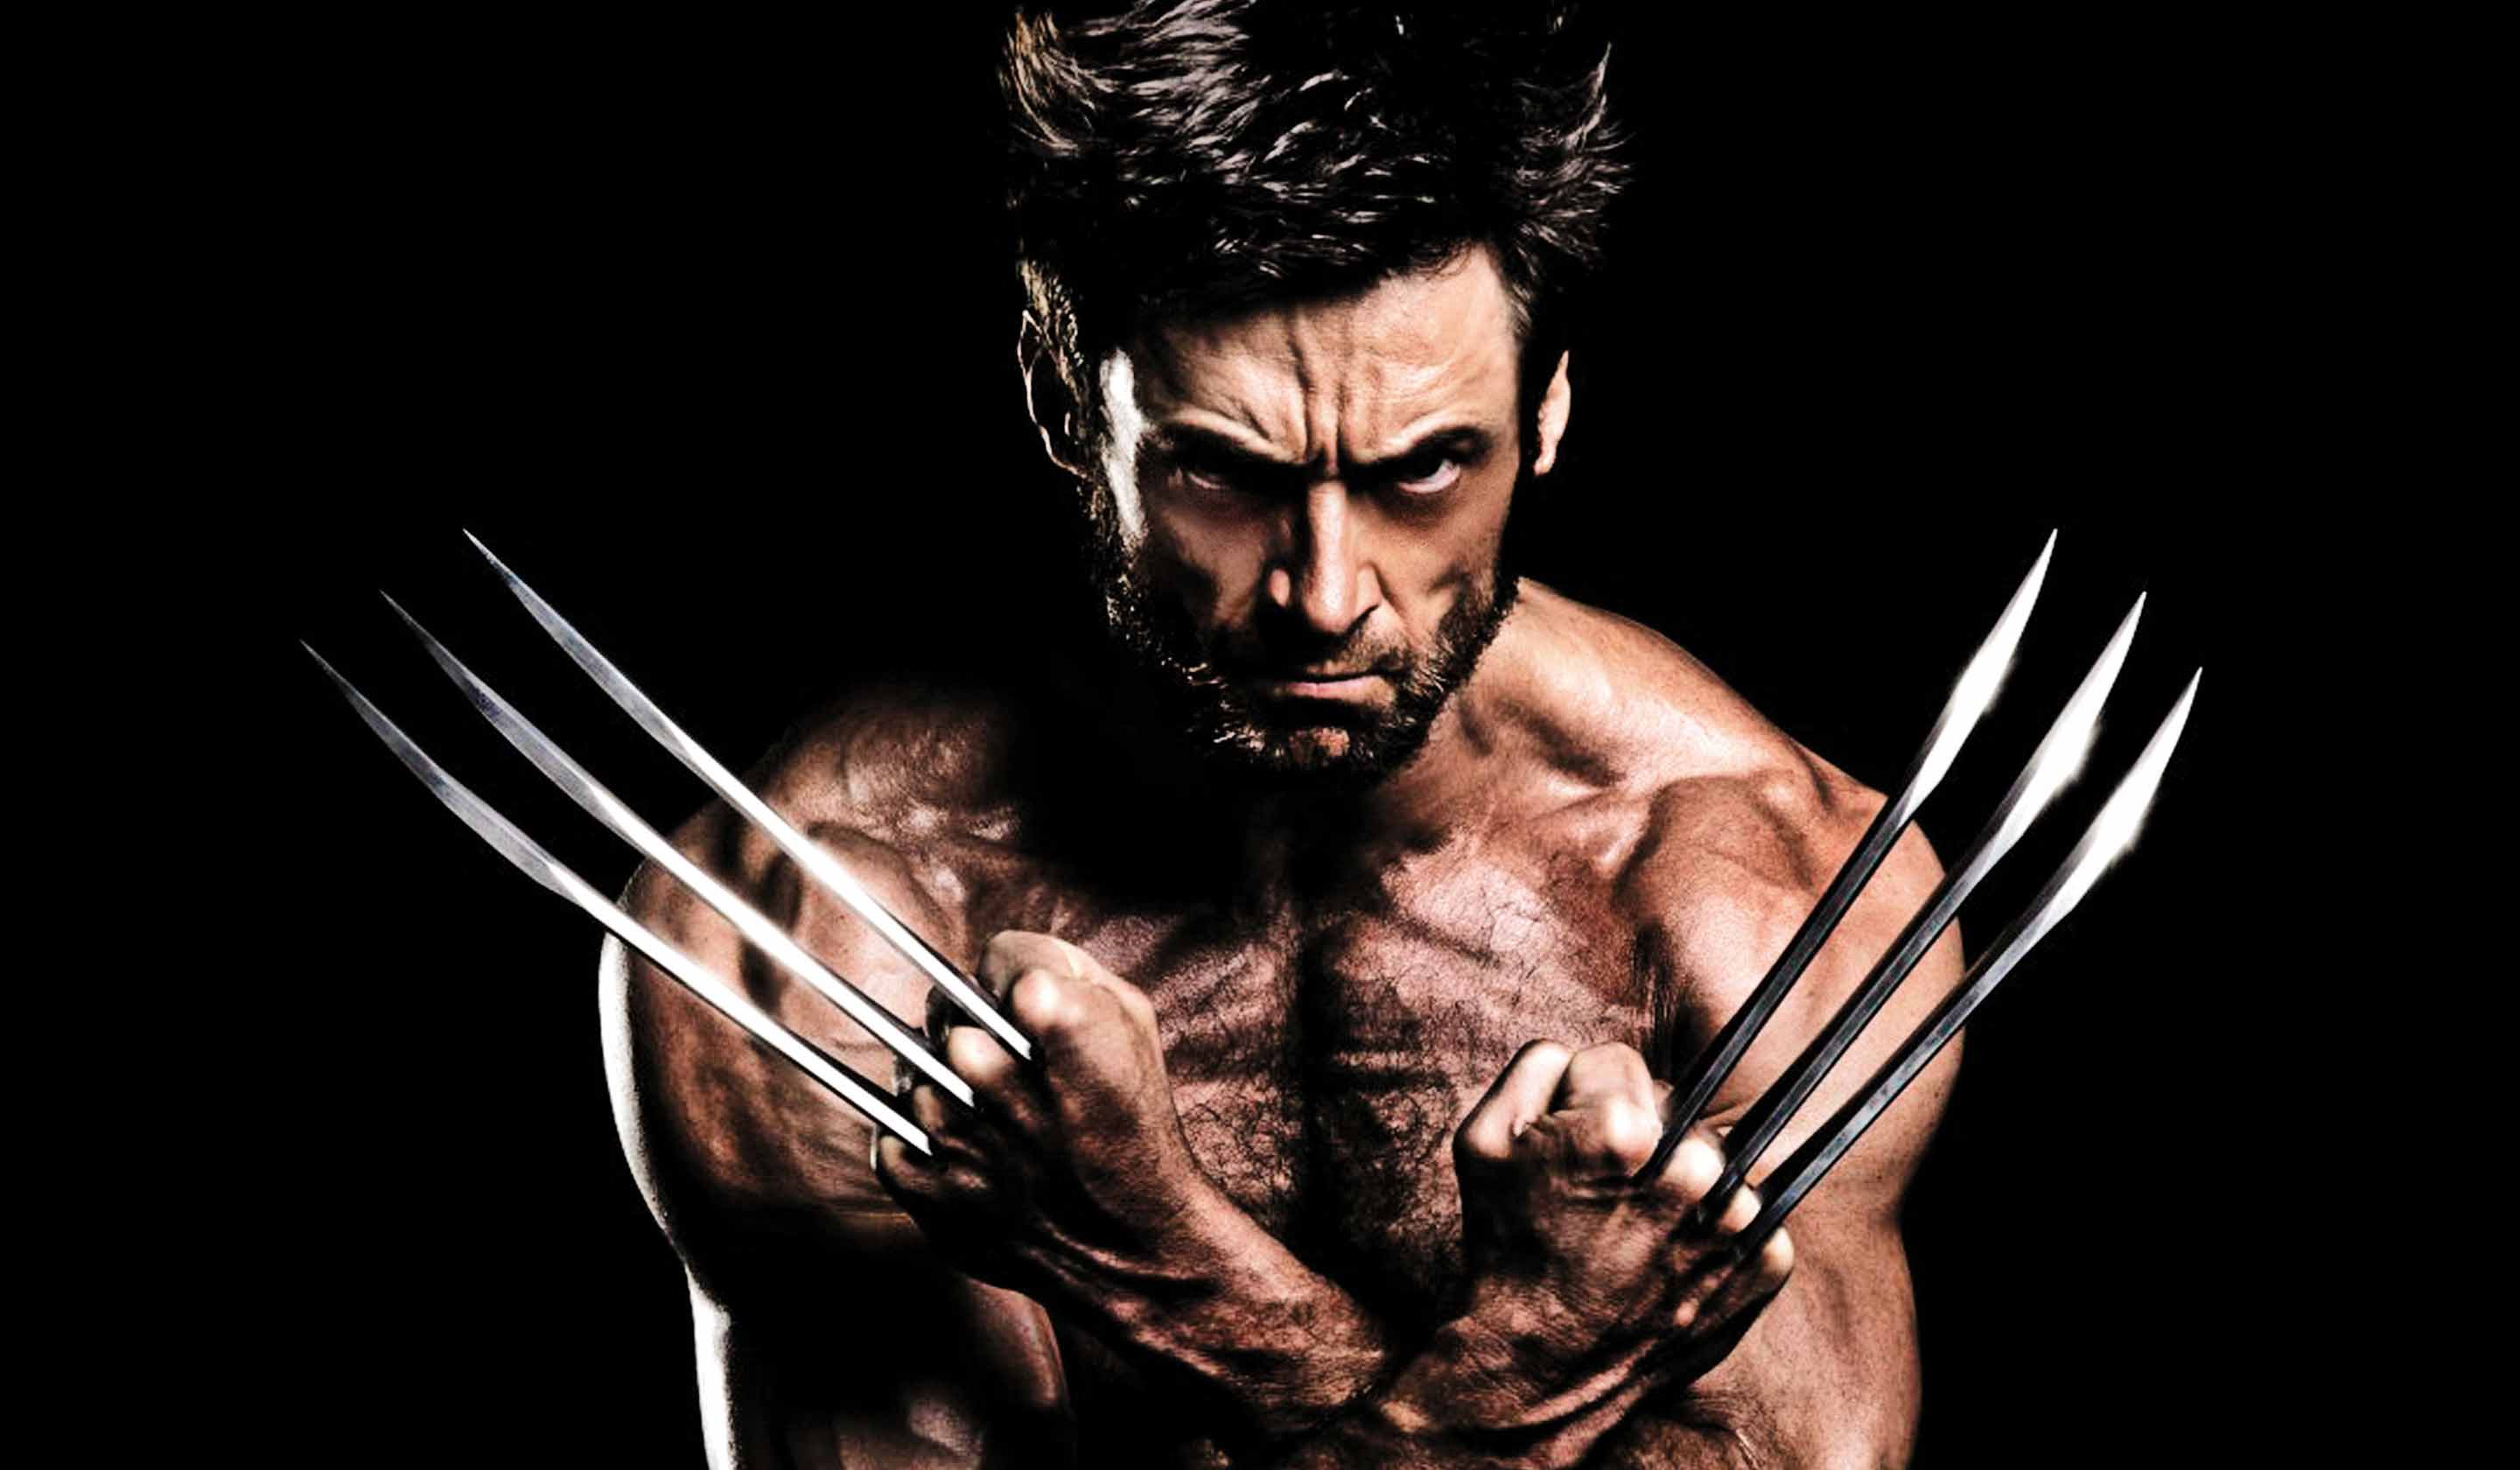 Image: Hugh Jackman, movie, Wolverine, look, muscle